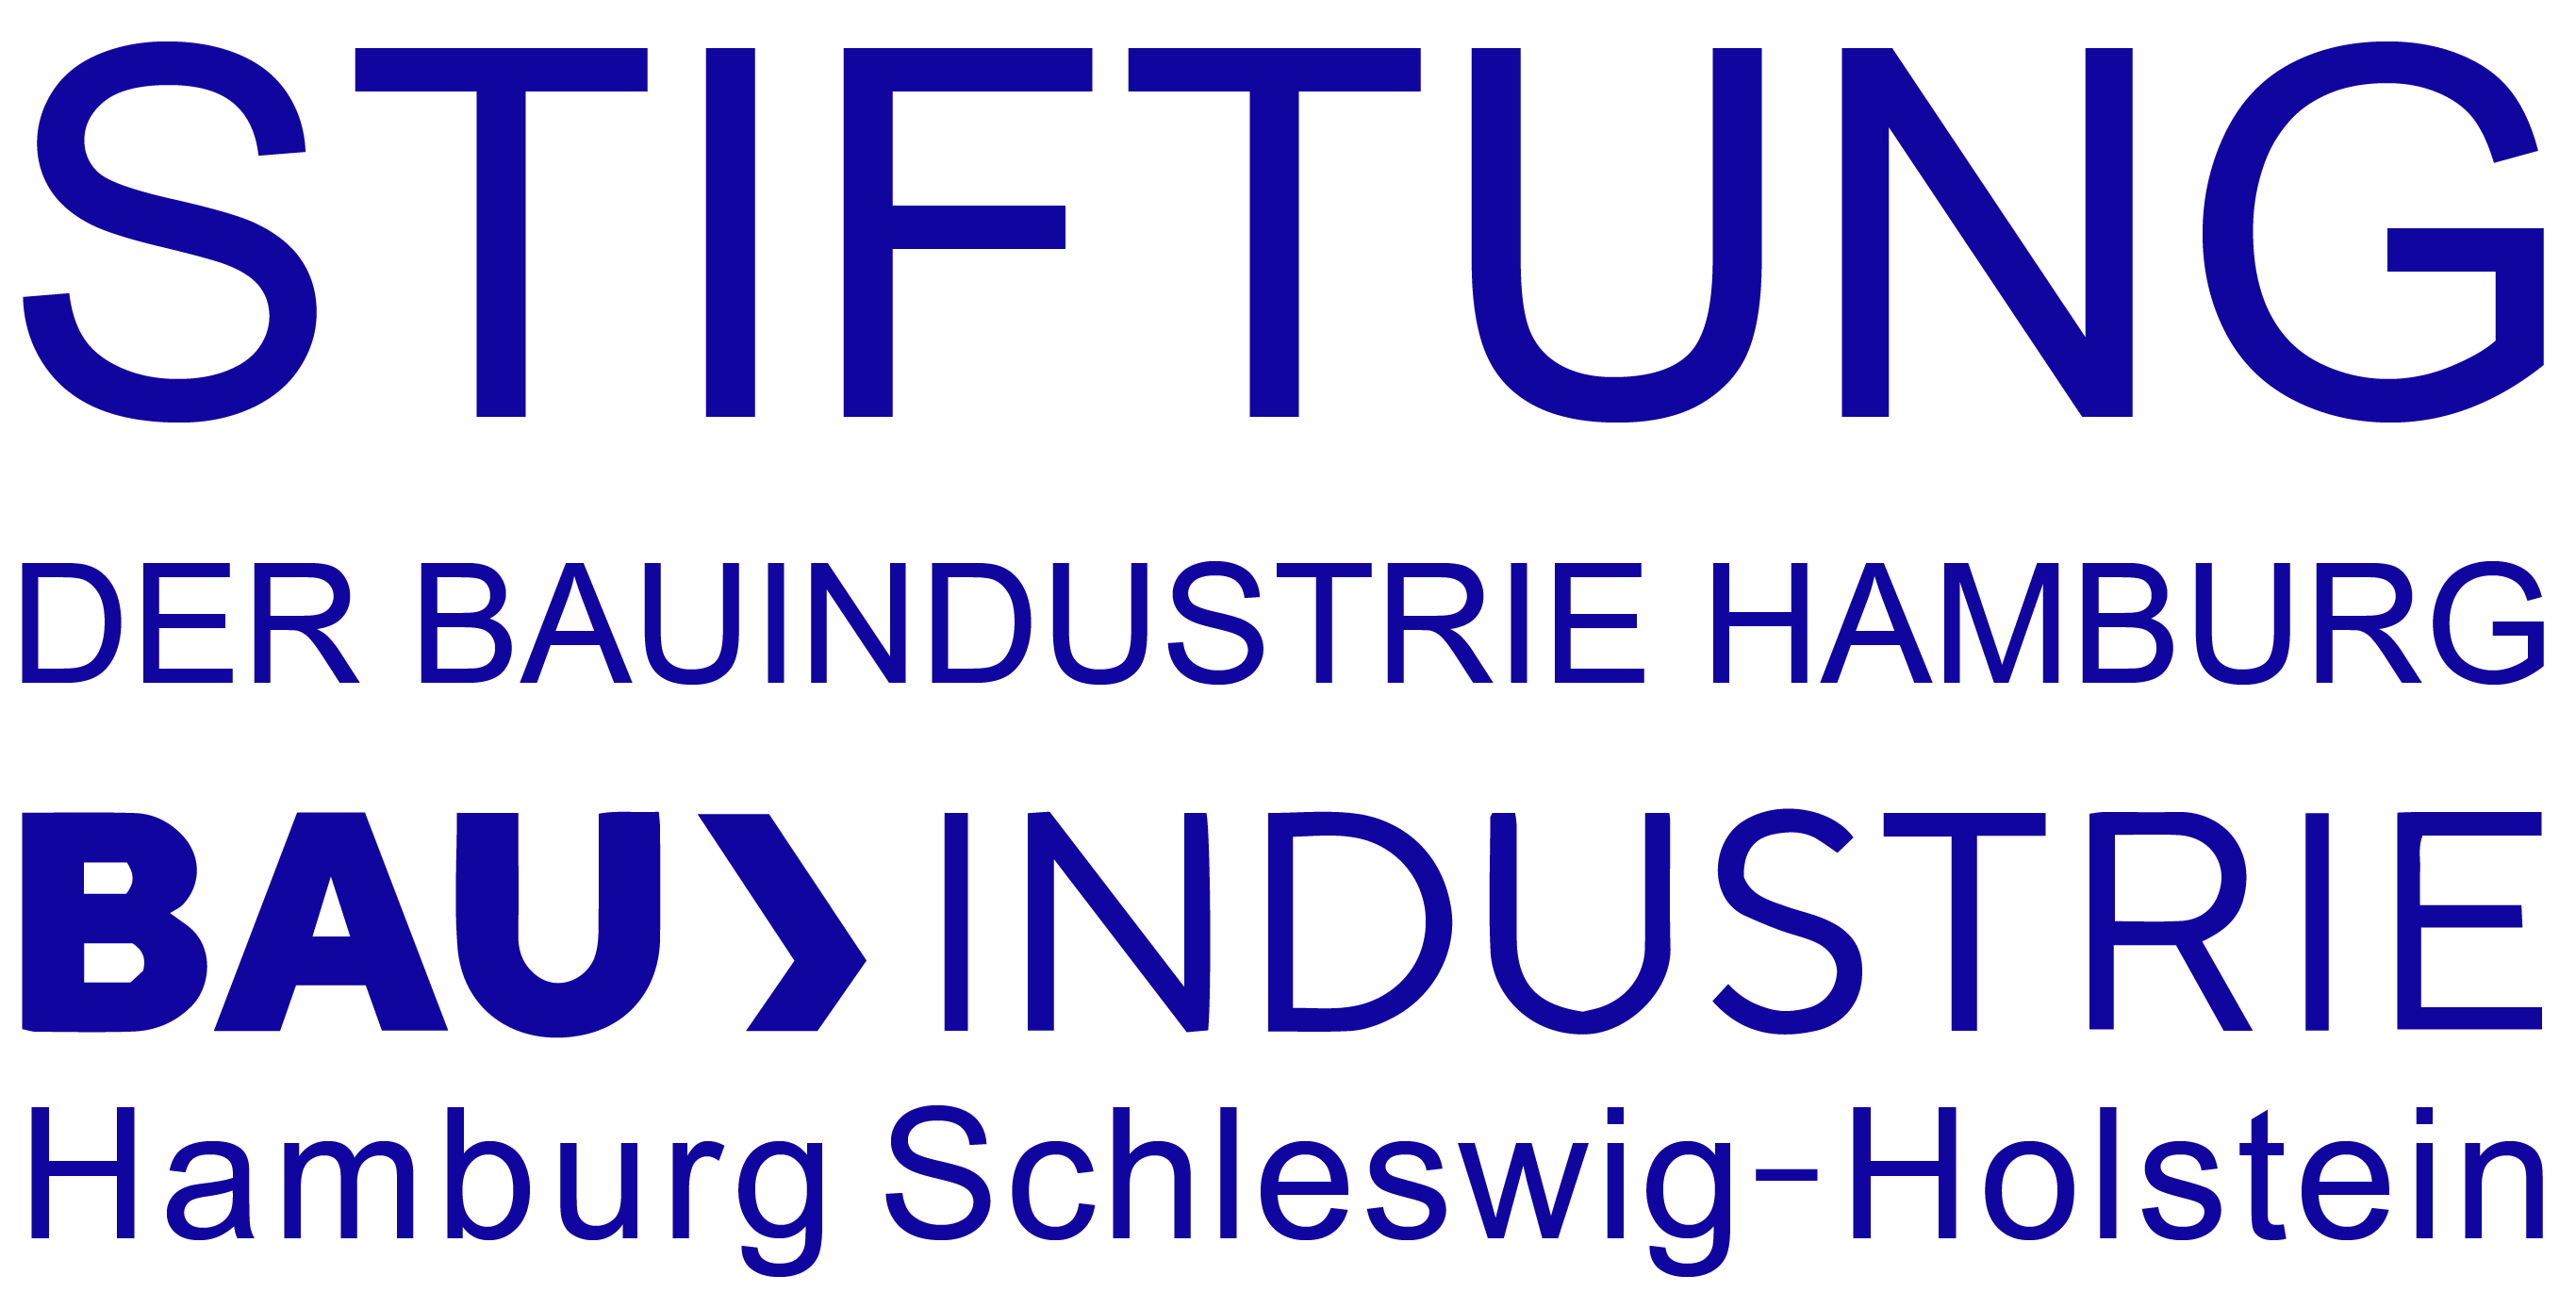 Logo der Stiftung der Bauindustrie Hamburg / Bauindustrieverband Hamburg Schleswig-Holstein e.V.